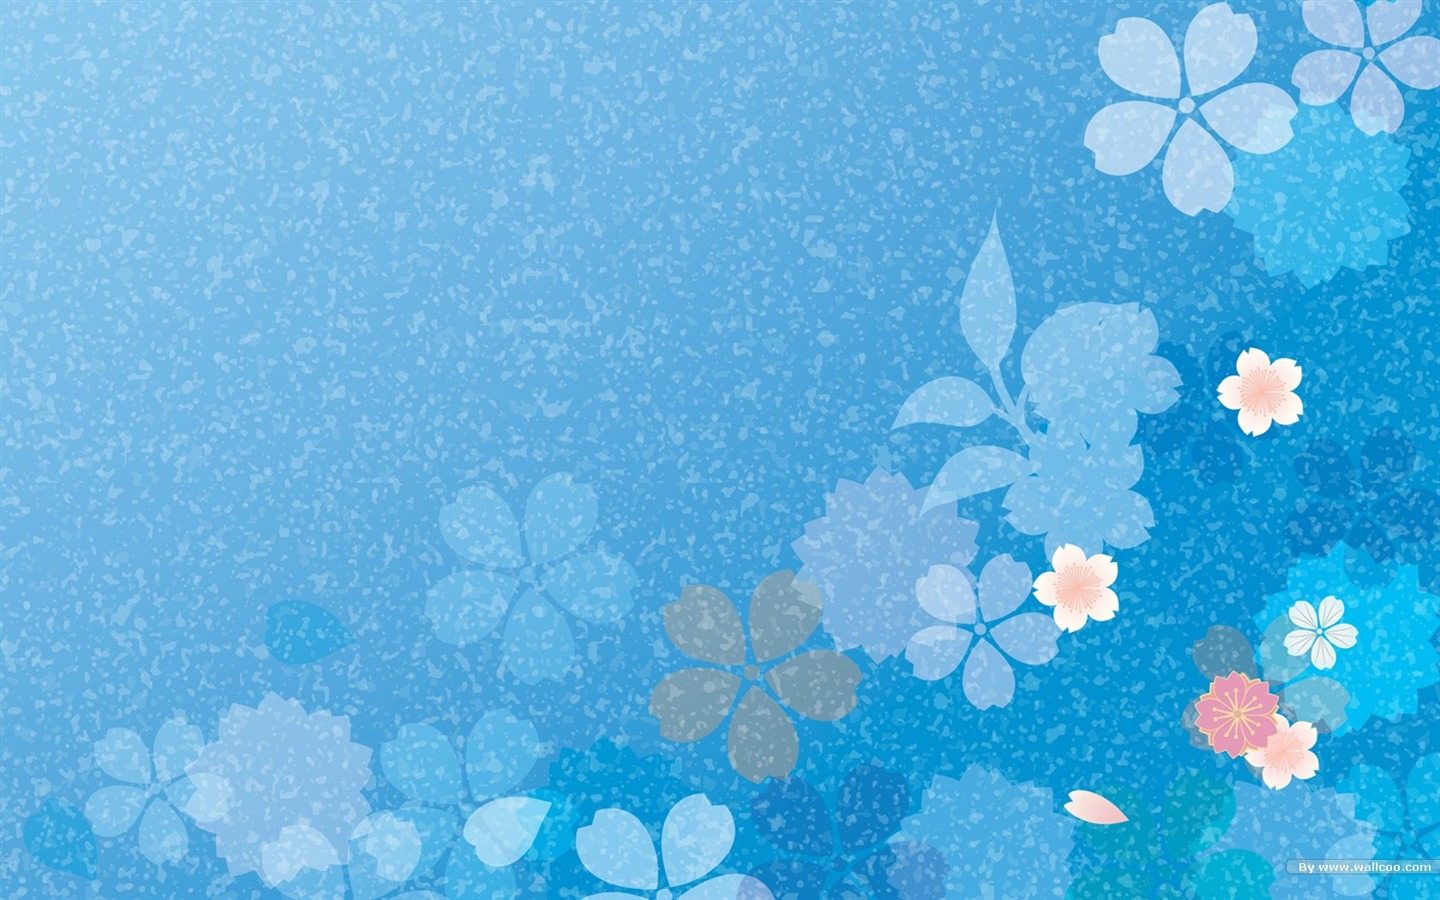 日本スタイルの壁紙パターンと色 #6 - 1440x900